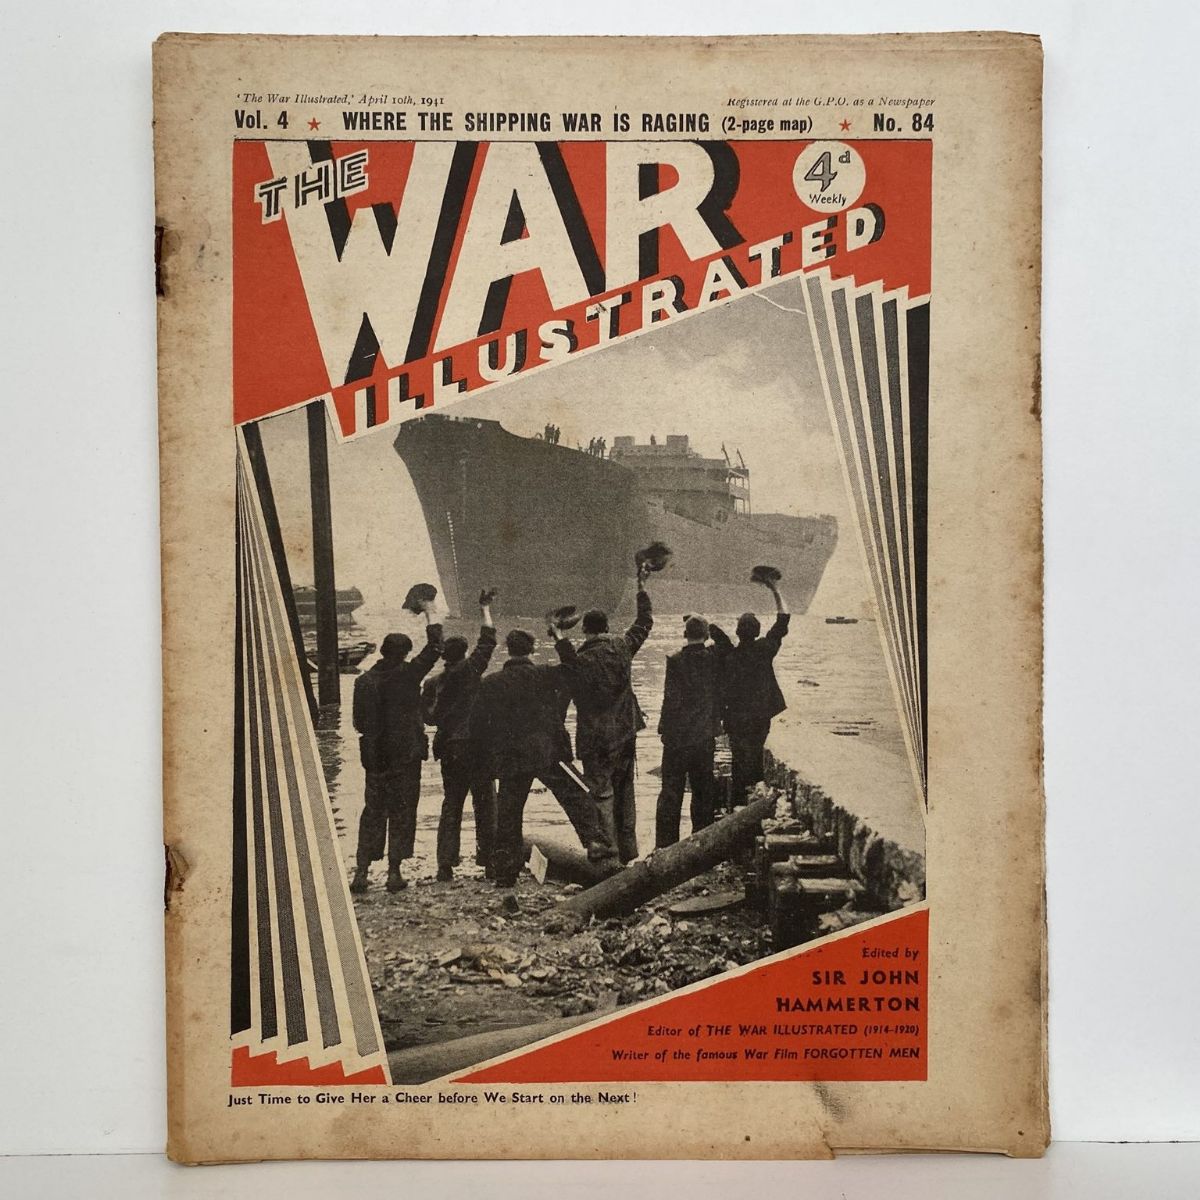 THE WAR ILLUSTRATED - Vol 4, No 84, 10th April 1941